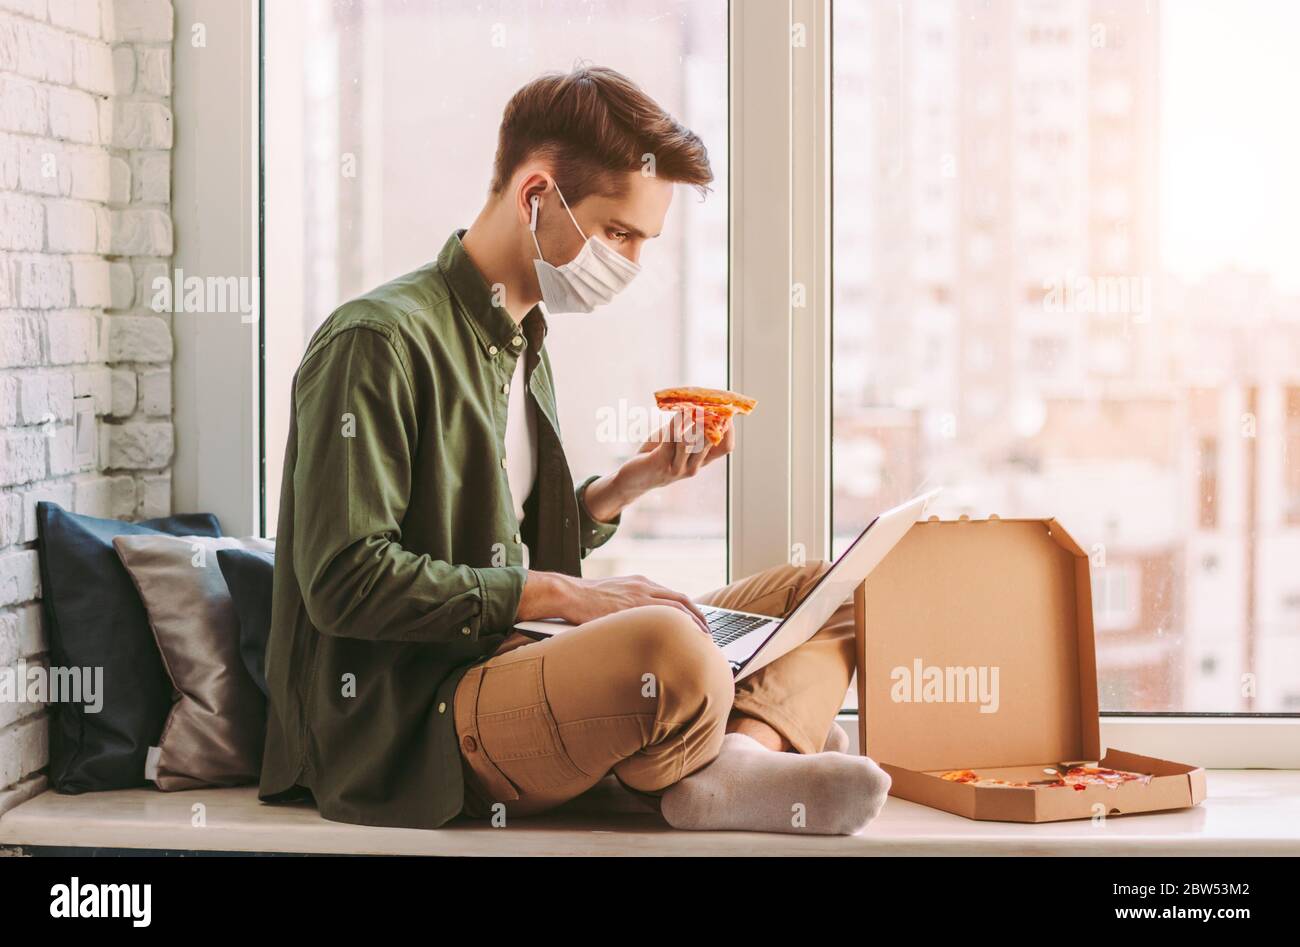 Homme d'affaires affamé dans le masque médical manger pizza snack, utiliser l'ordinateur portable pour le travail à domicile. Un homme hipster élégant dans un masque de protection pour une tranche de pizza Banque D'Images